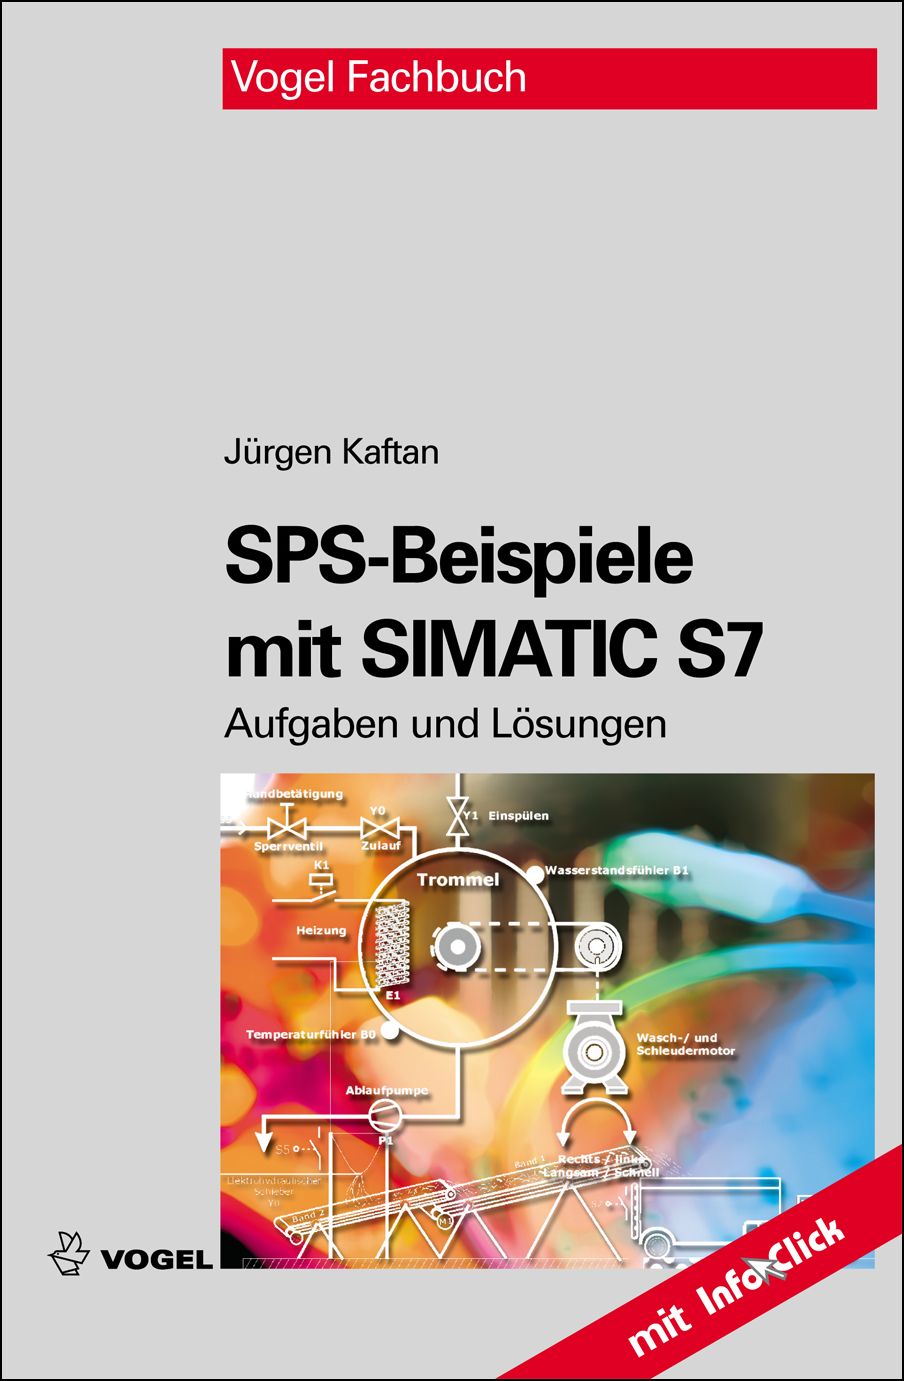 Das Fachbuch "SPS-Beispiele mit SIMATIC S7" von Jürgen Kaftan